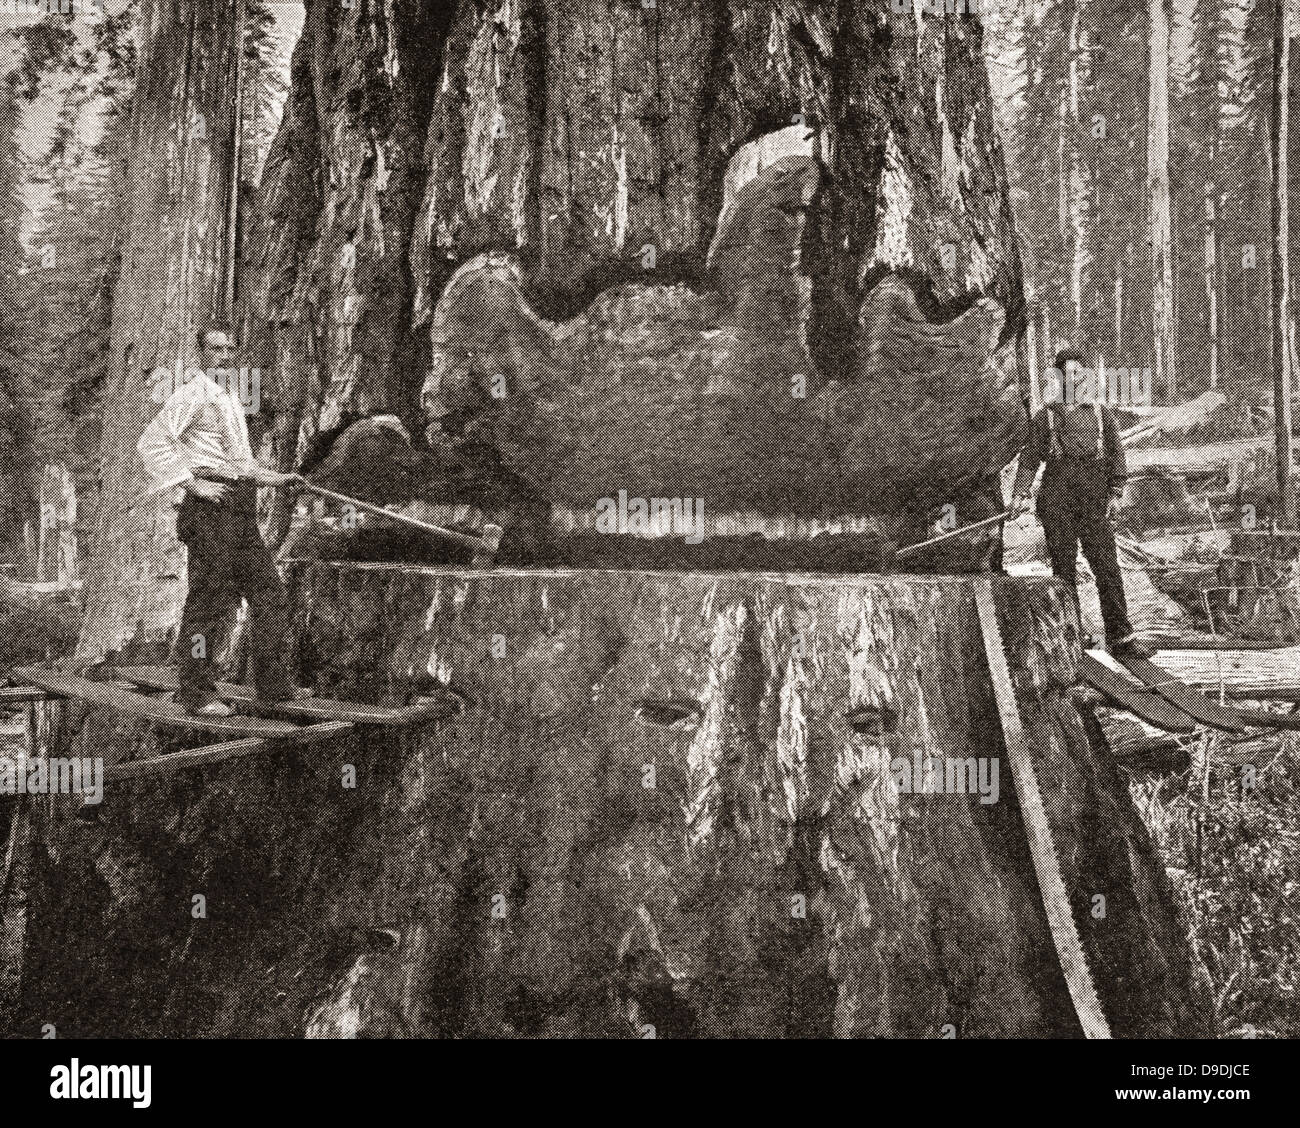 Schneiden einen riesigen California Redwood-Baum im späten 19. Jahrhundert. Stockfoto